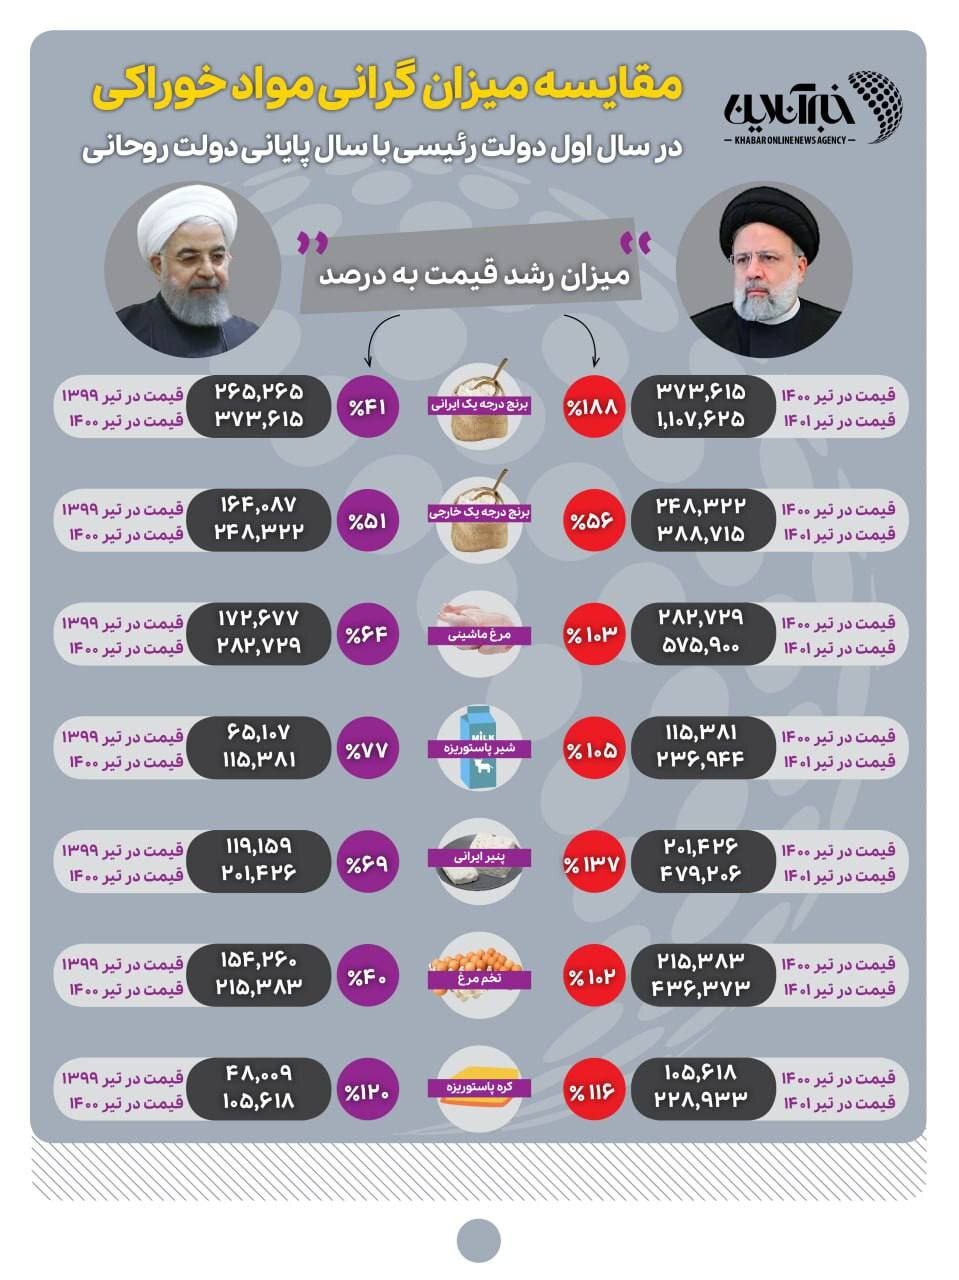  اینفوگرافیک اشتباه ایرنا درباره مقایسه گرانی دولت روحانی و رئیسی